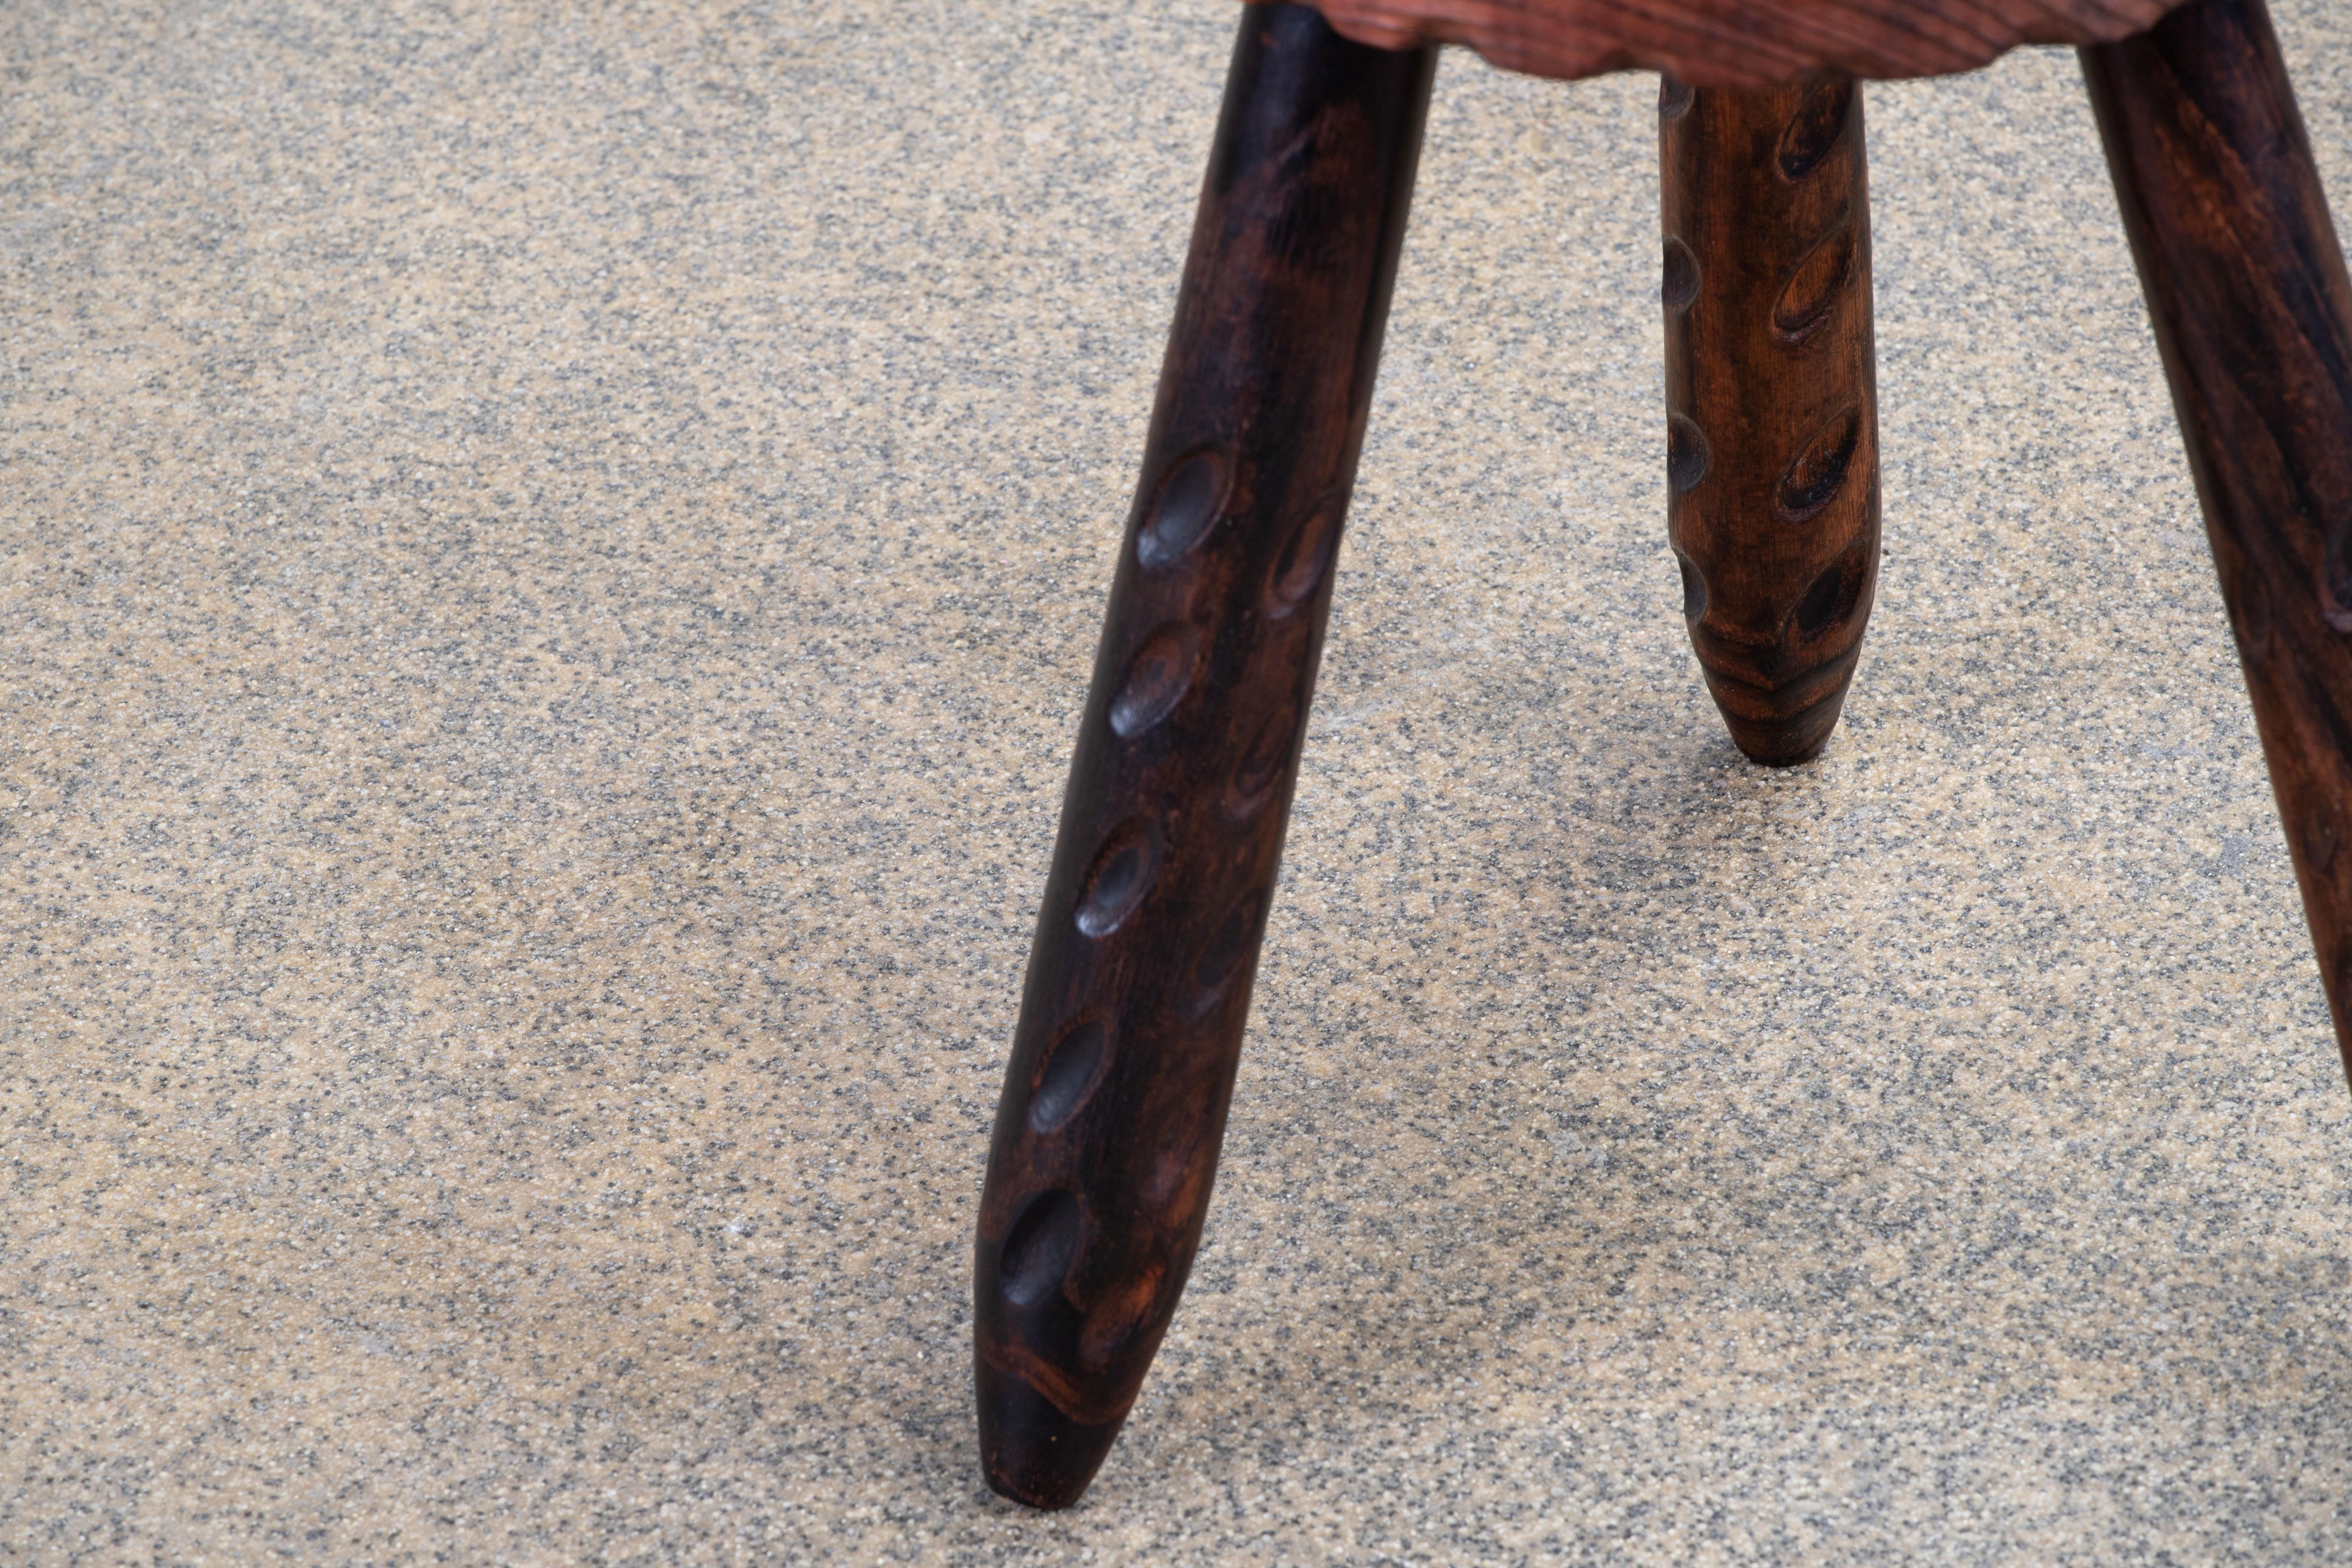 Fantastischer Holzhocker aus Frankreich im Stil von Charlotte Perriand. Hergestellt in den 1960er Jahren mit drei Beinen. Keine Hardware. Guter alter Zustand.
 